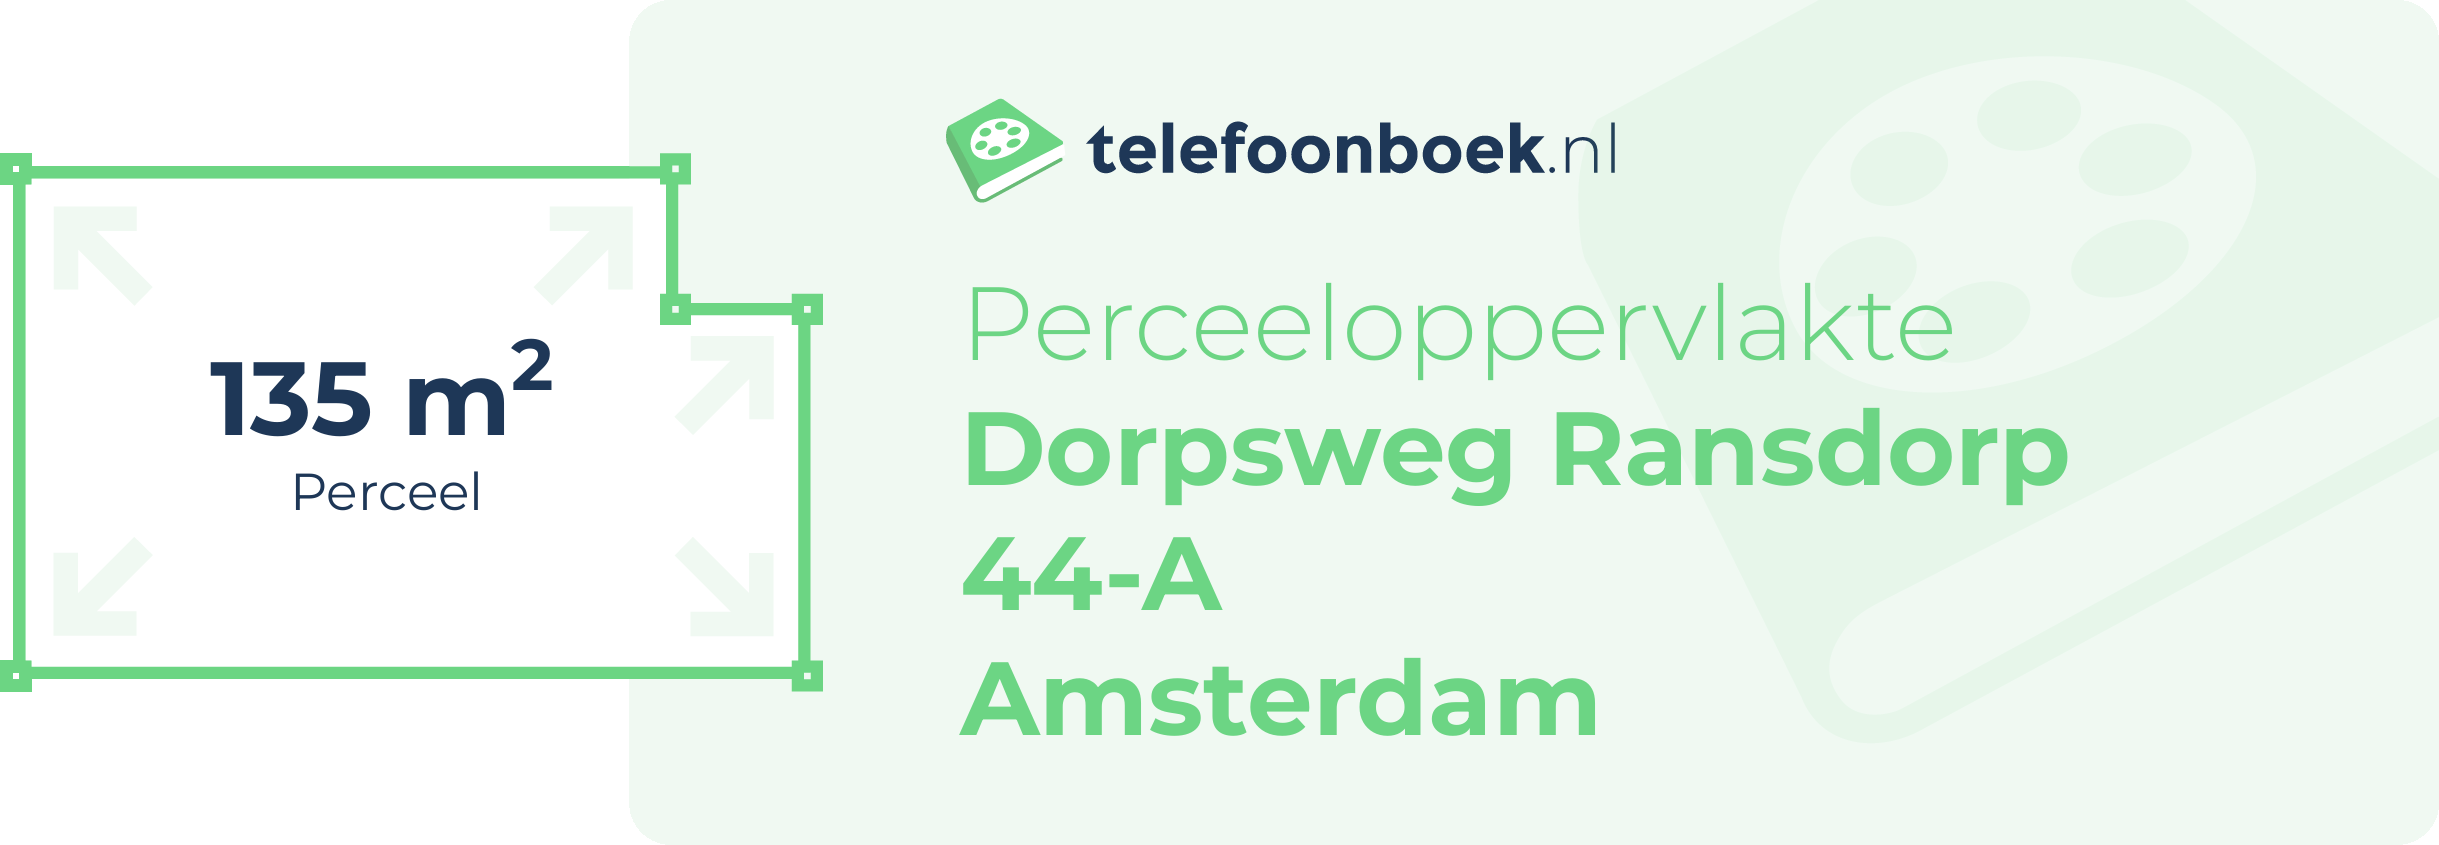 Perceeloppervlakte Dorpsweg Ransdorp 44-A Amsterdam